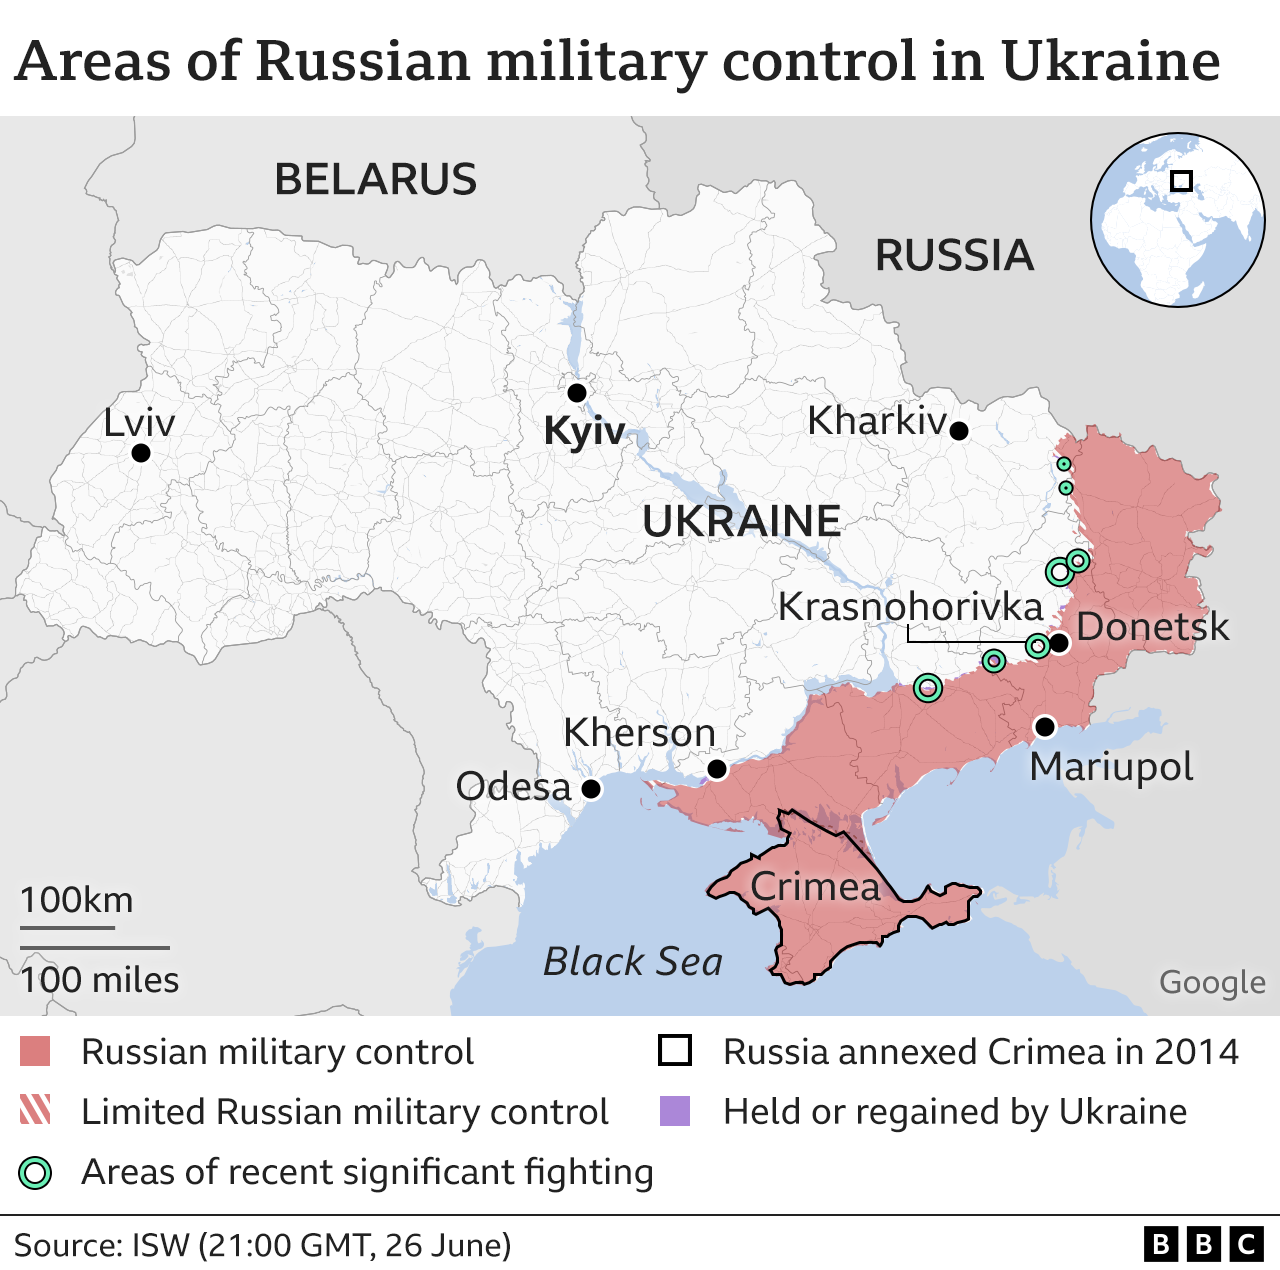 Mapa que muestra las zonas de control ruso en Ucrania